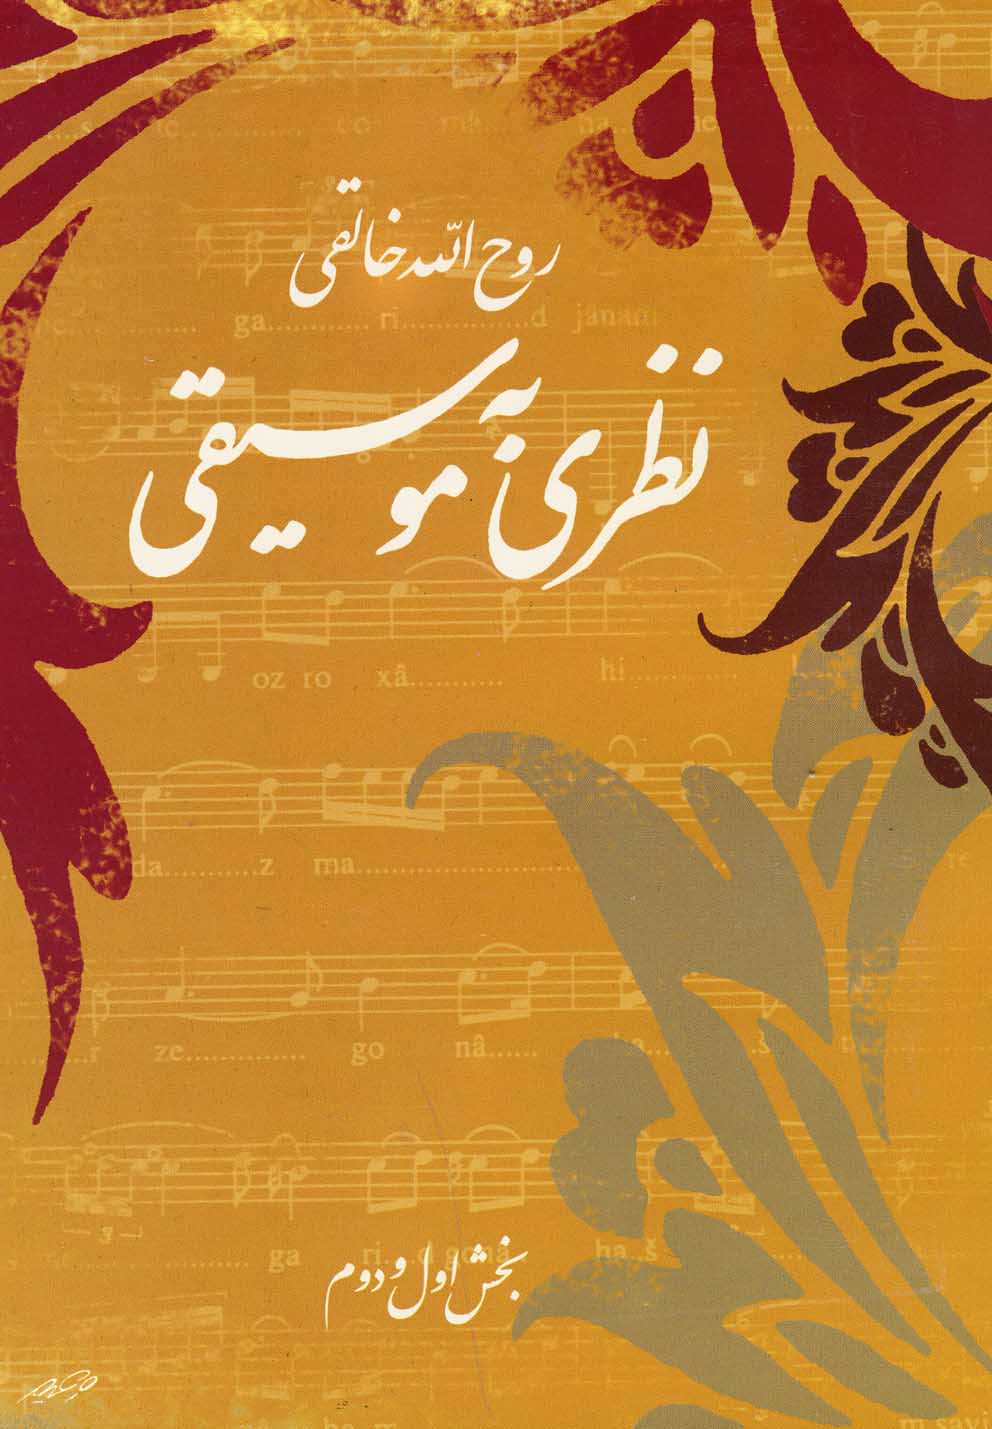 نظري به موسيقي "تئوري موسيقي ايراني"